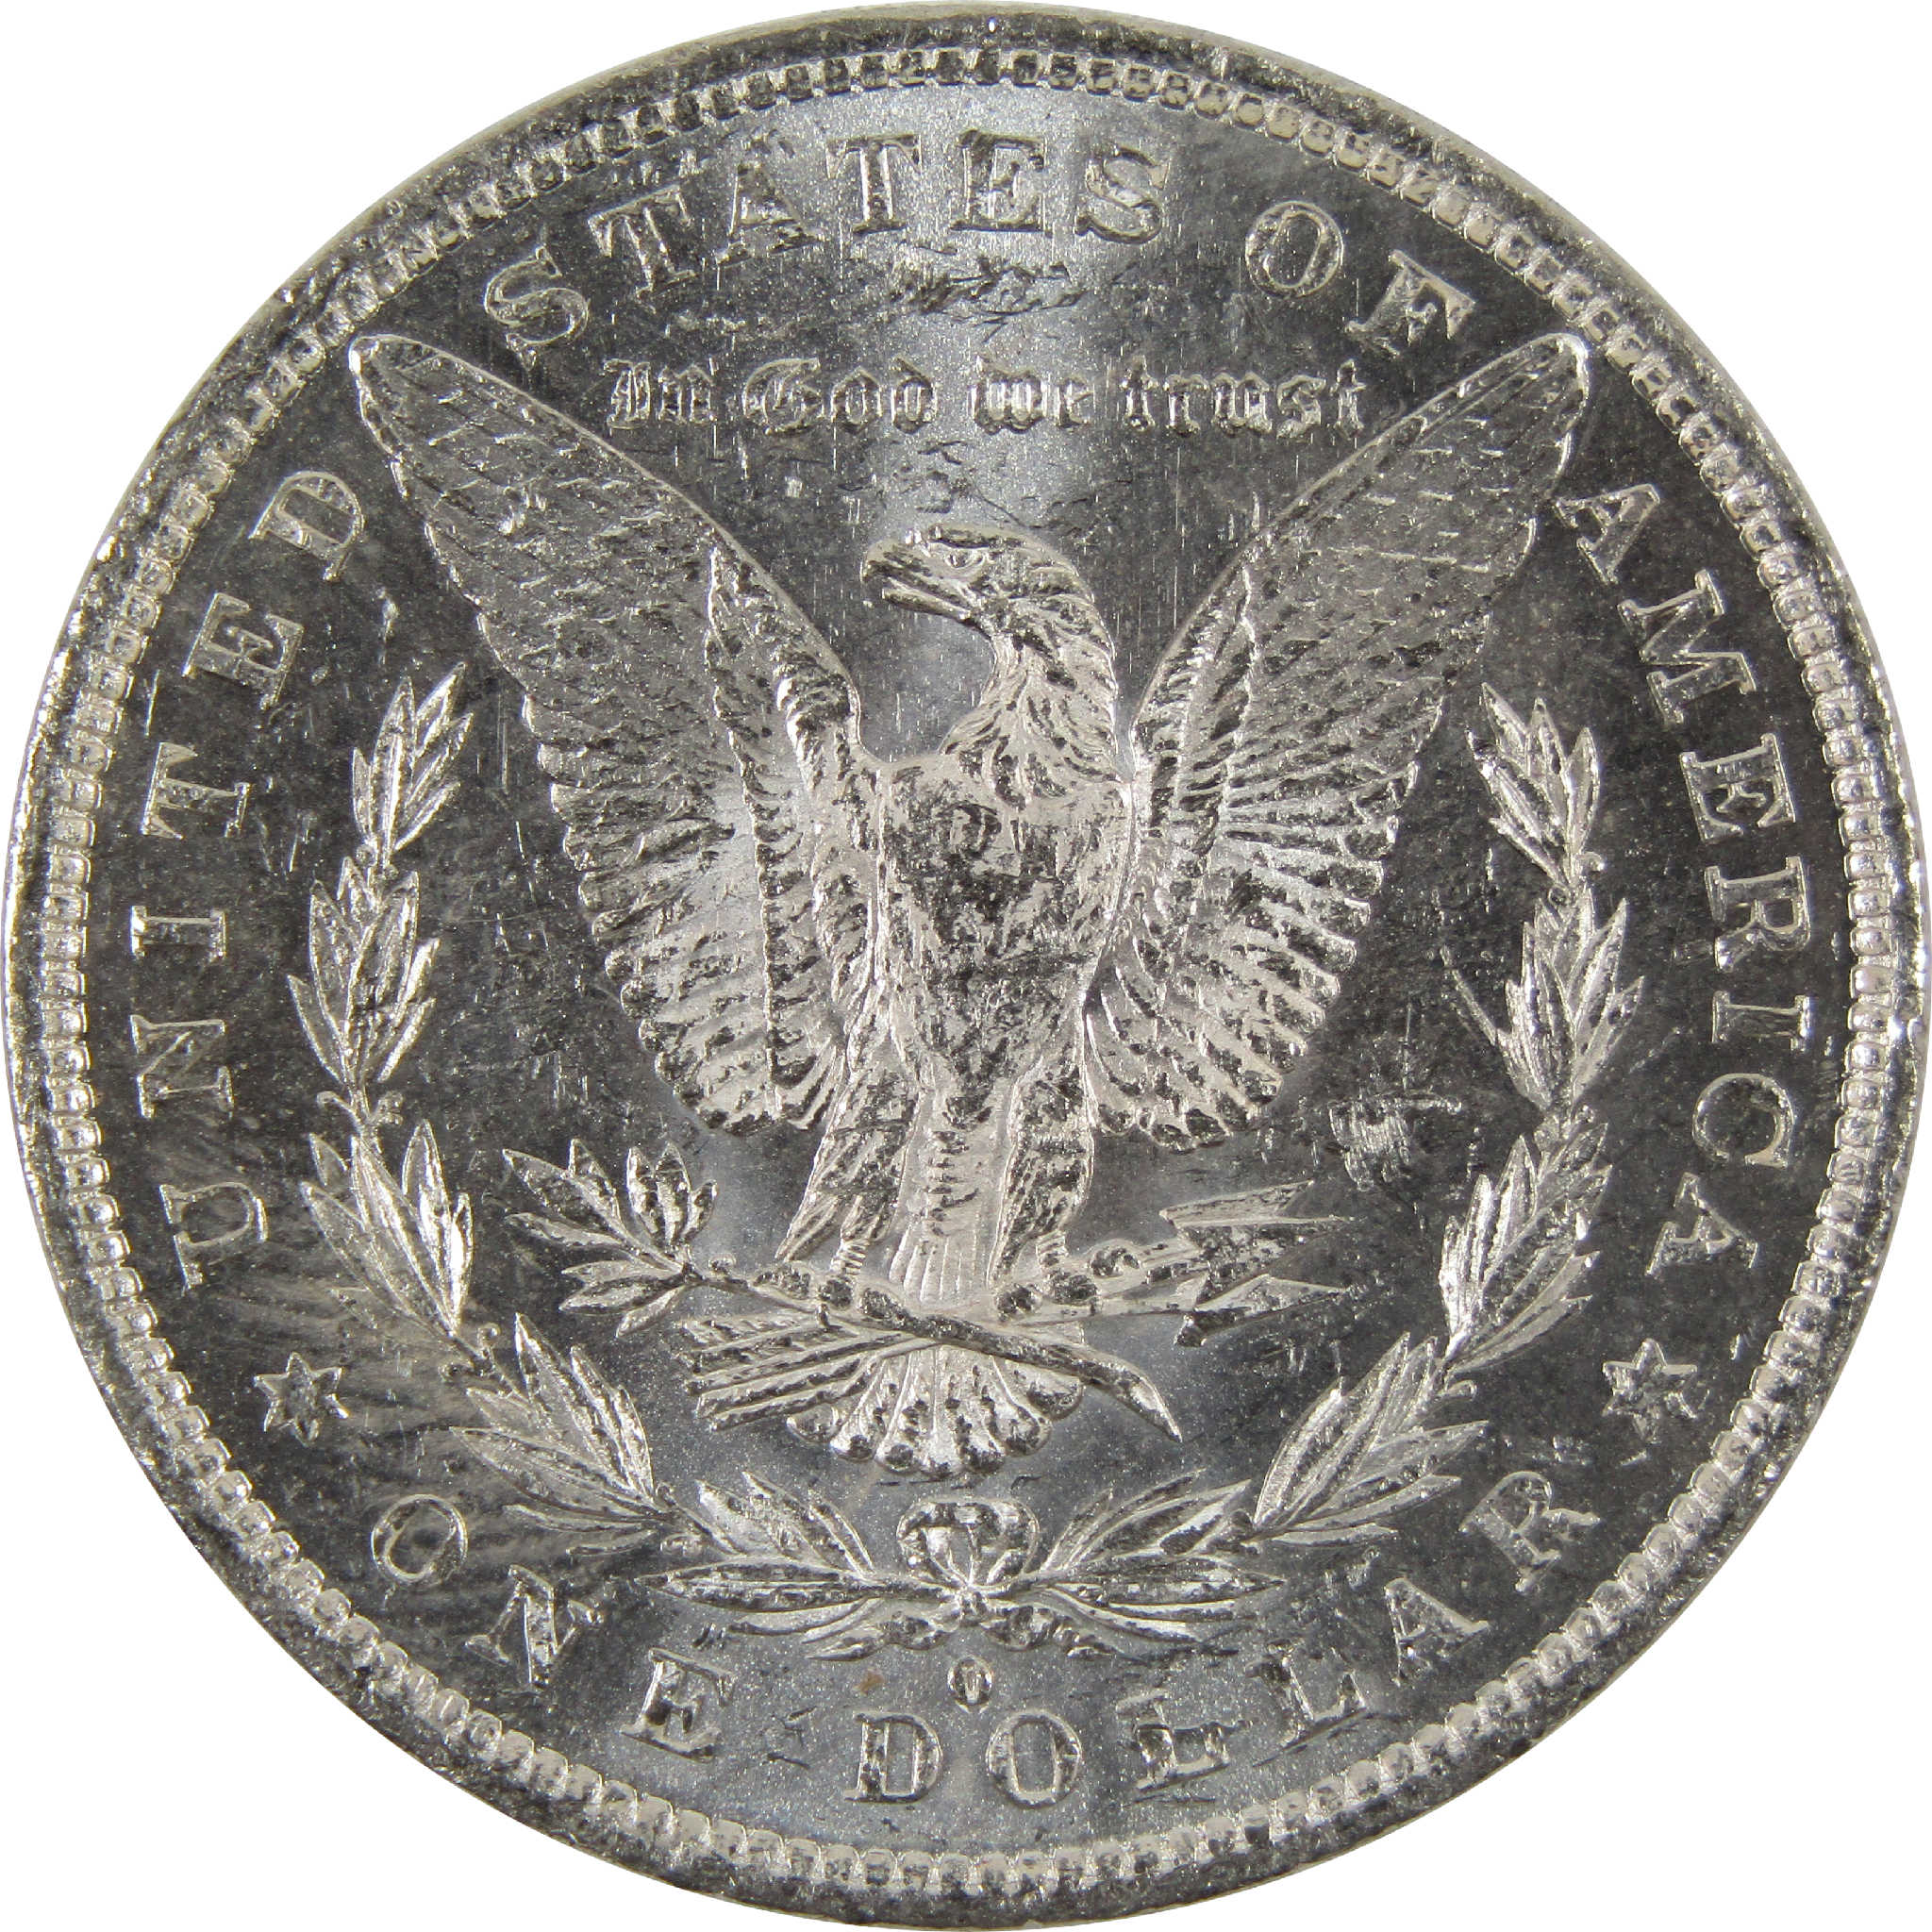 1882 O Morgan Dollar BU Uncirculated 90% Silver $1 Coin SKU:I8924 - Morgan coin - Morgan silver dollar - Morgan silver dollar for sale - Profile Coins &amp; Collectibles